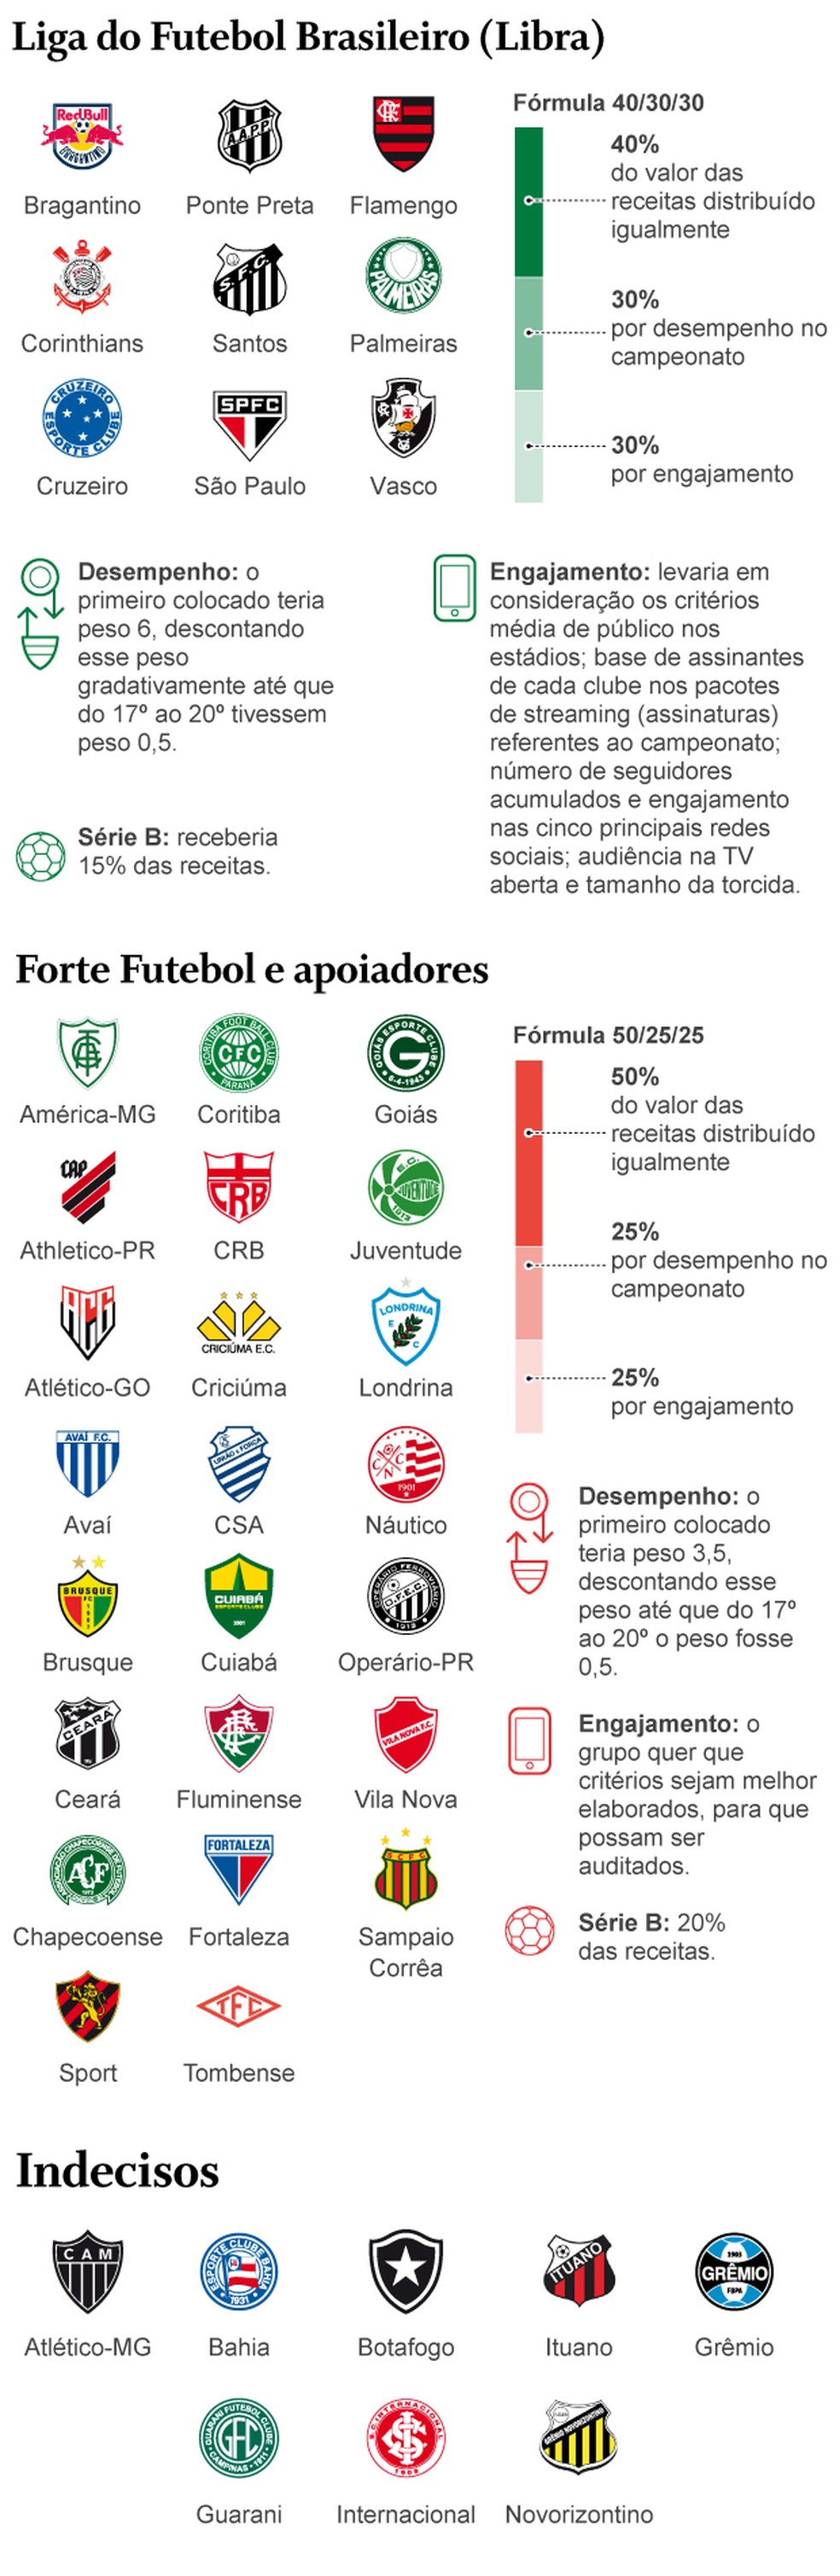 Clubes criam liga para gerir futebol brasileiro e mudar estatuto